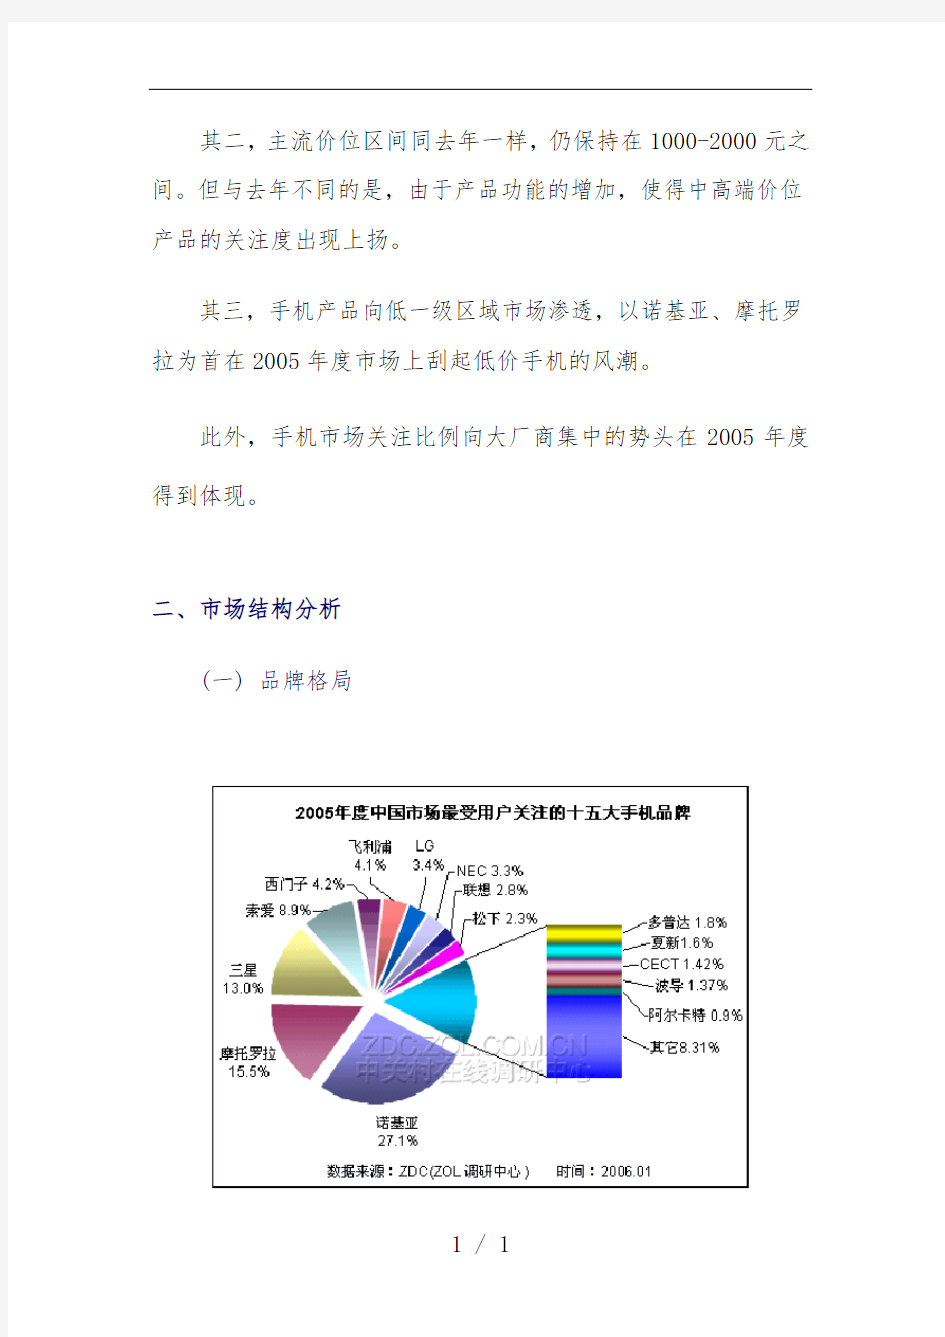 中国手机市场年度分析报告